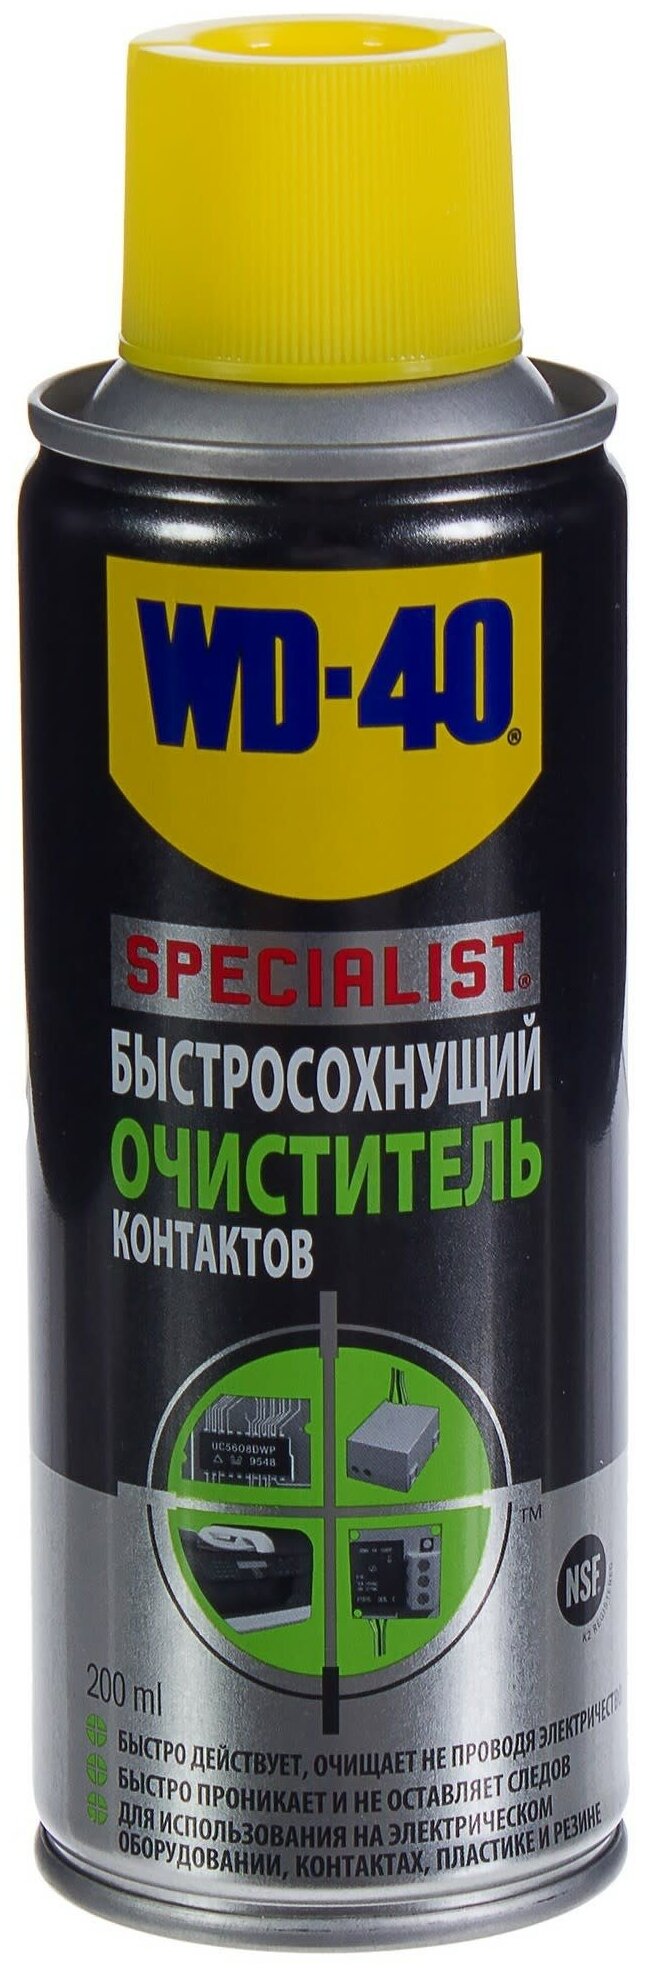 WD-40 Specialist Быстросохнущий очиститель контактов чистящий аэрозоль для оргтехники